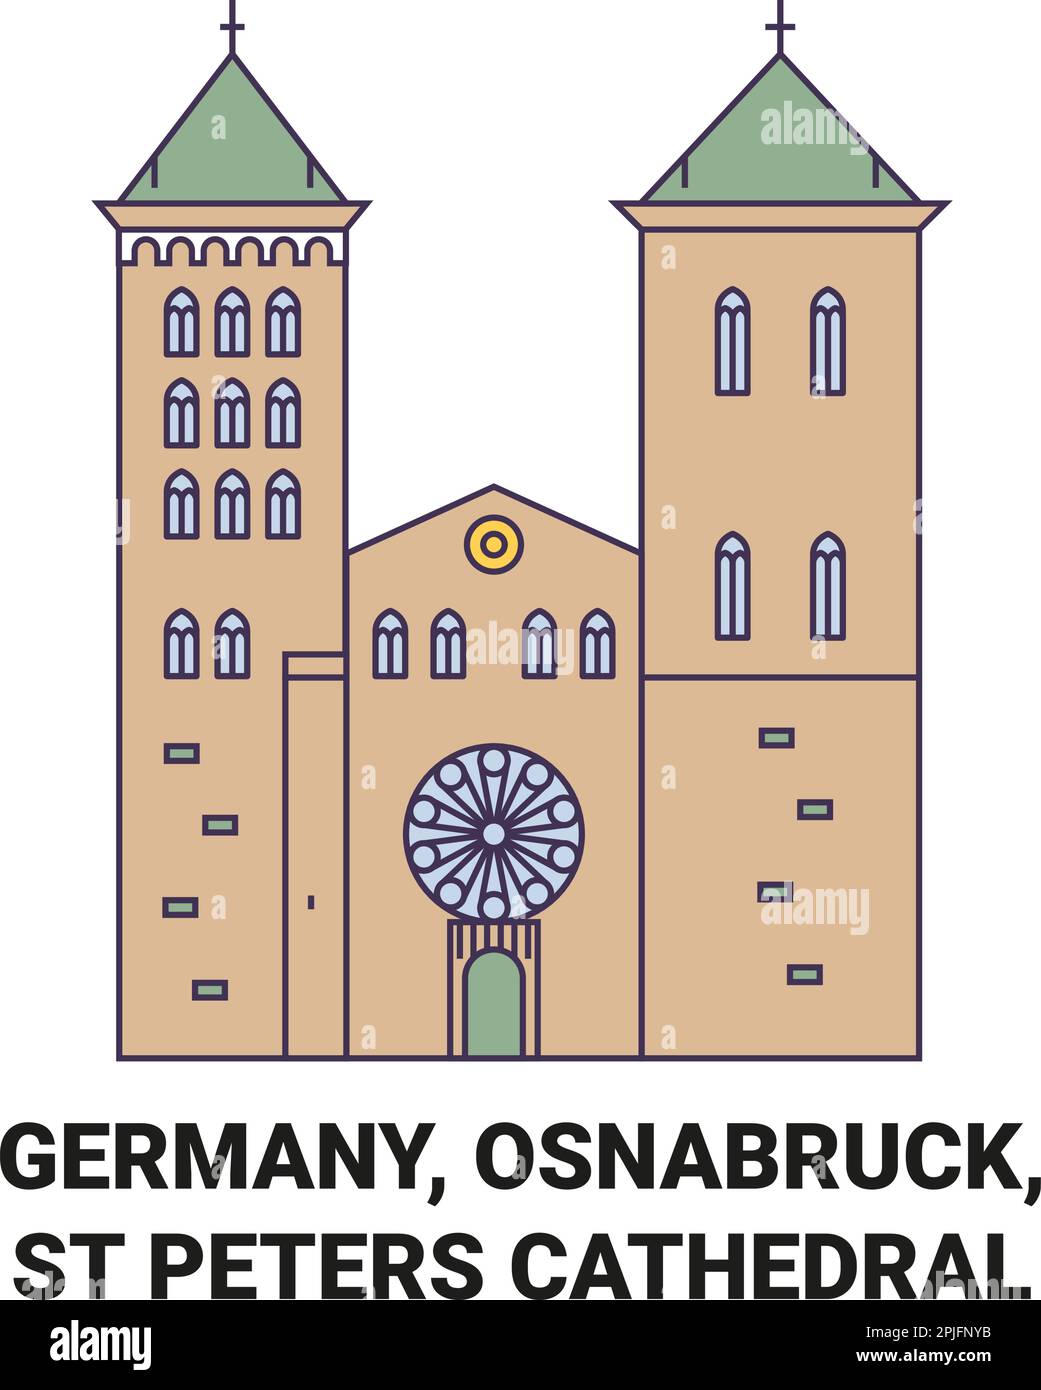 Allemagne, Osnabruck,St Peters Cathédrale voyage illustration vecteur Illustration de Vecteur